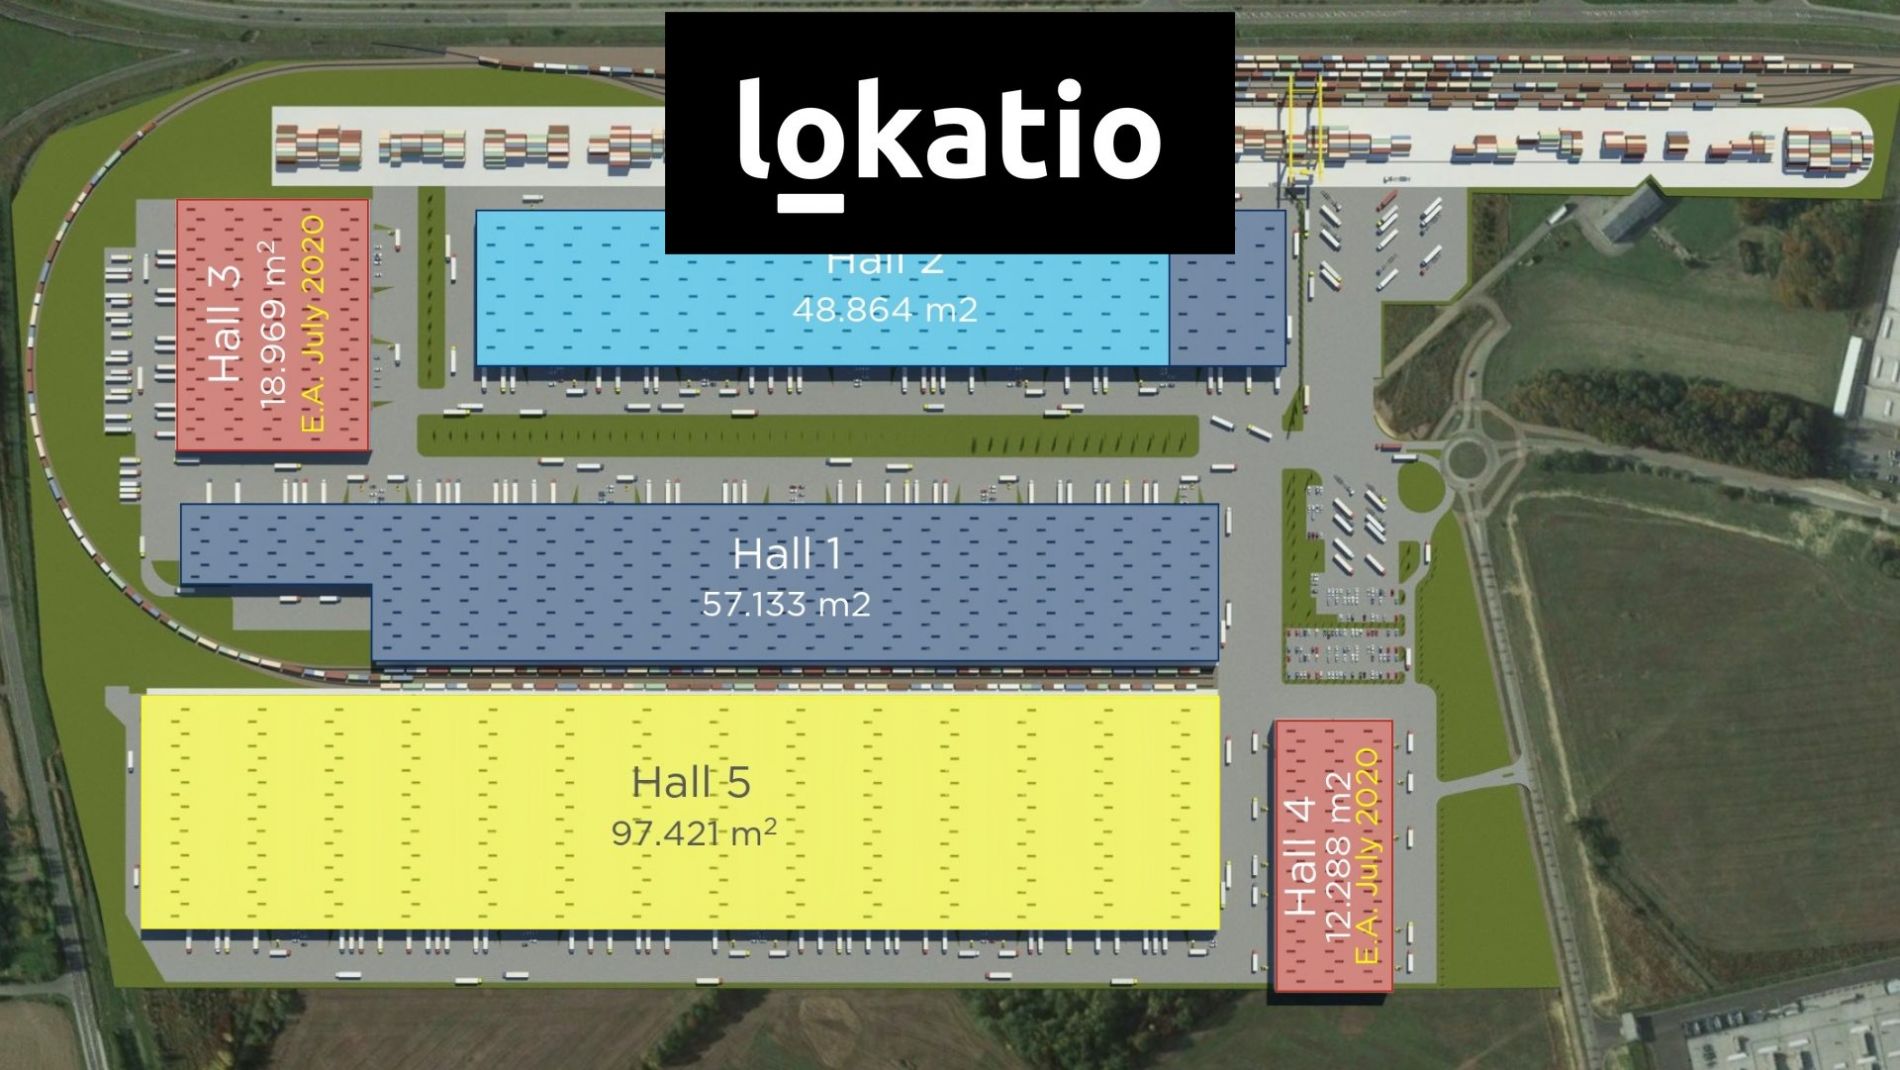 Pronájem - sklady, haly, výrobní prostory k pronájmu u letiště  - Ostrava Mošnov (možnost vlečky), obrázek č. 3